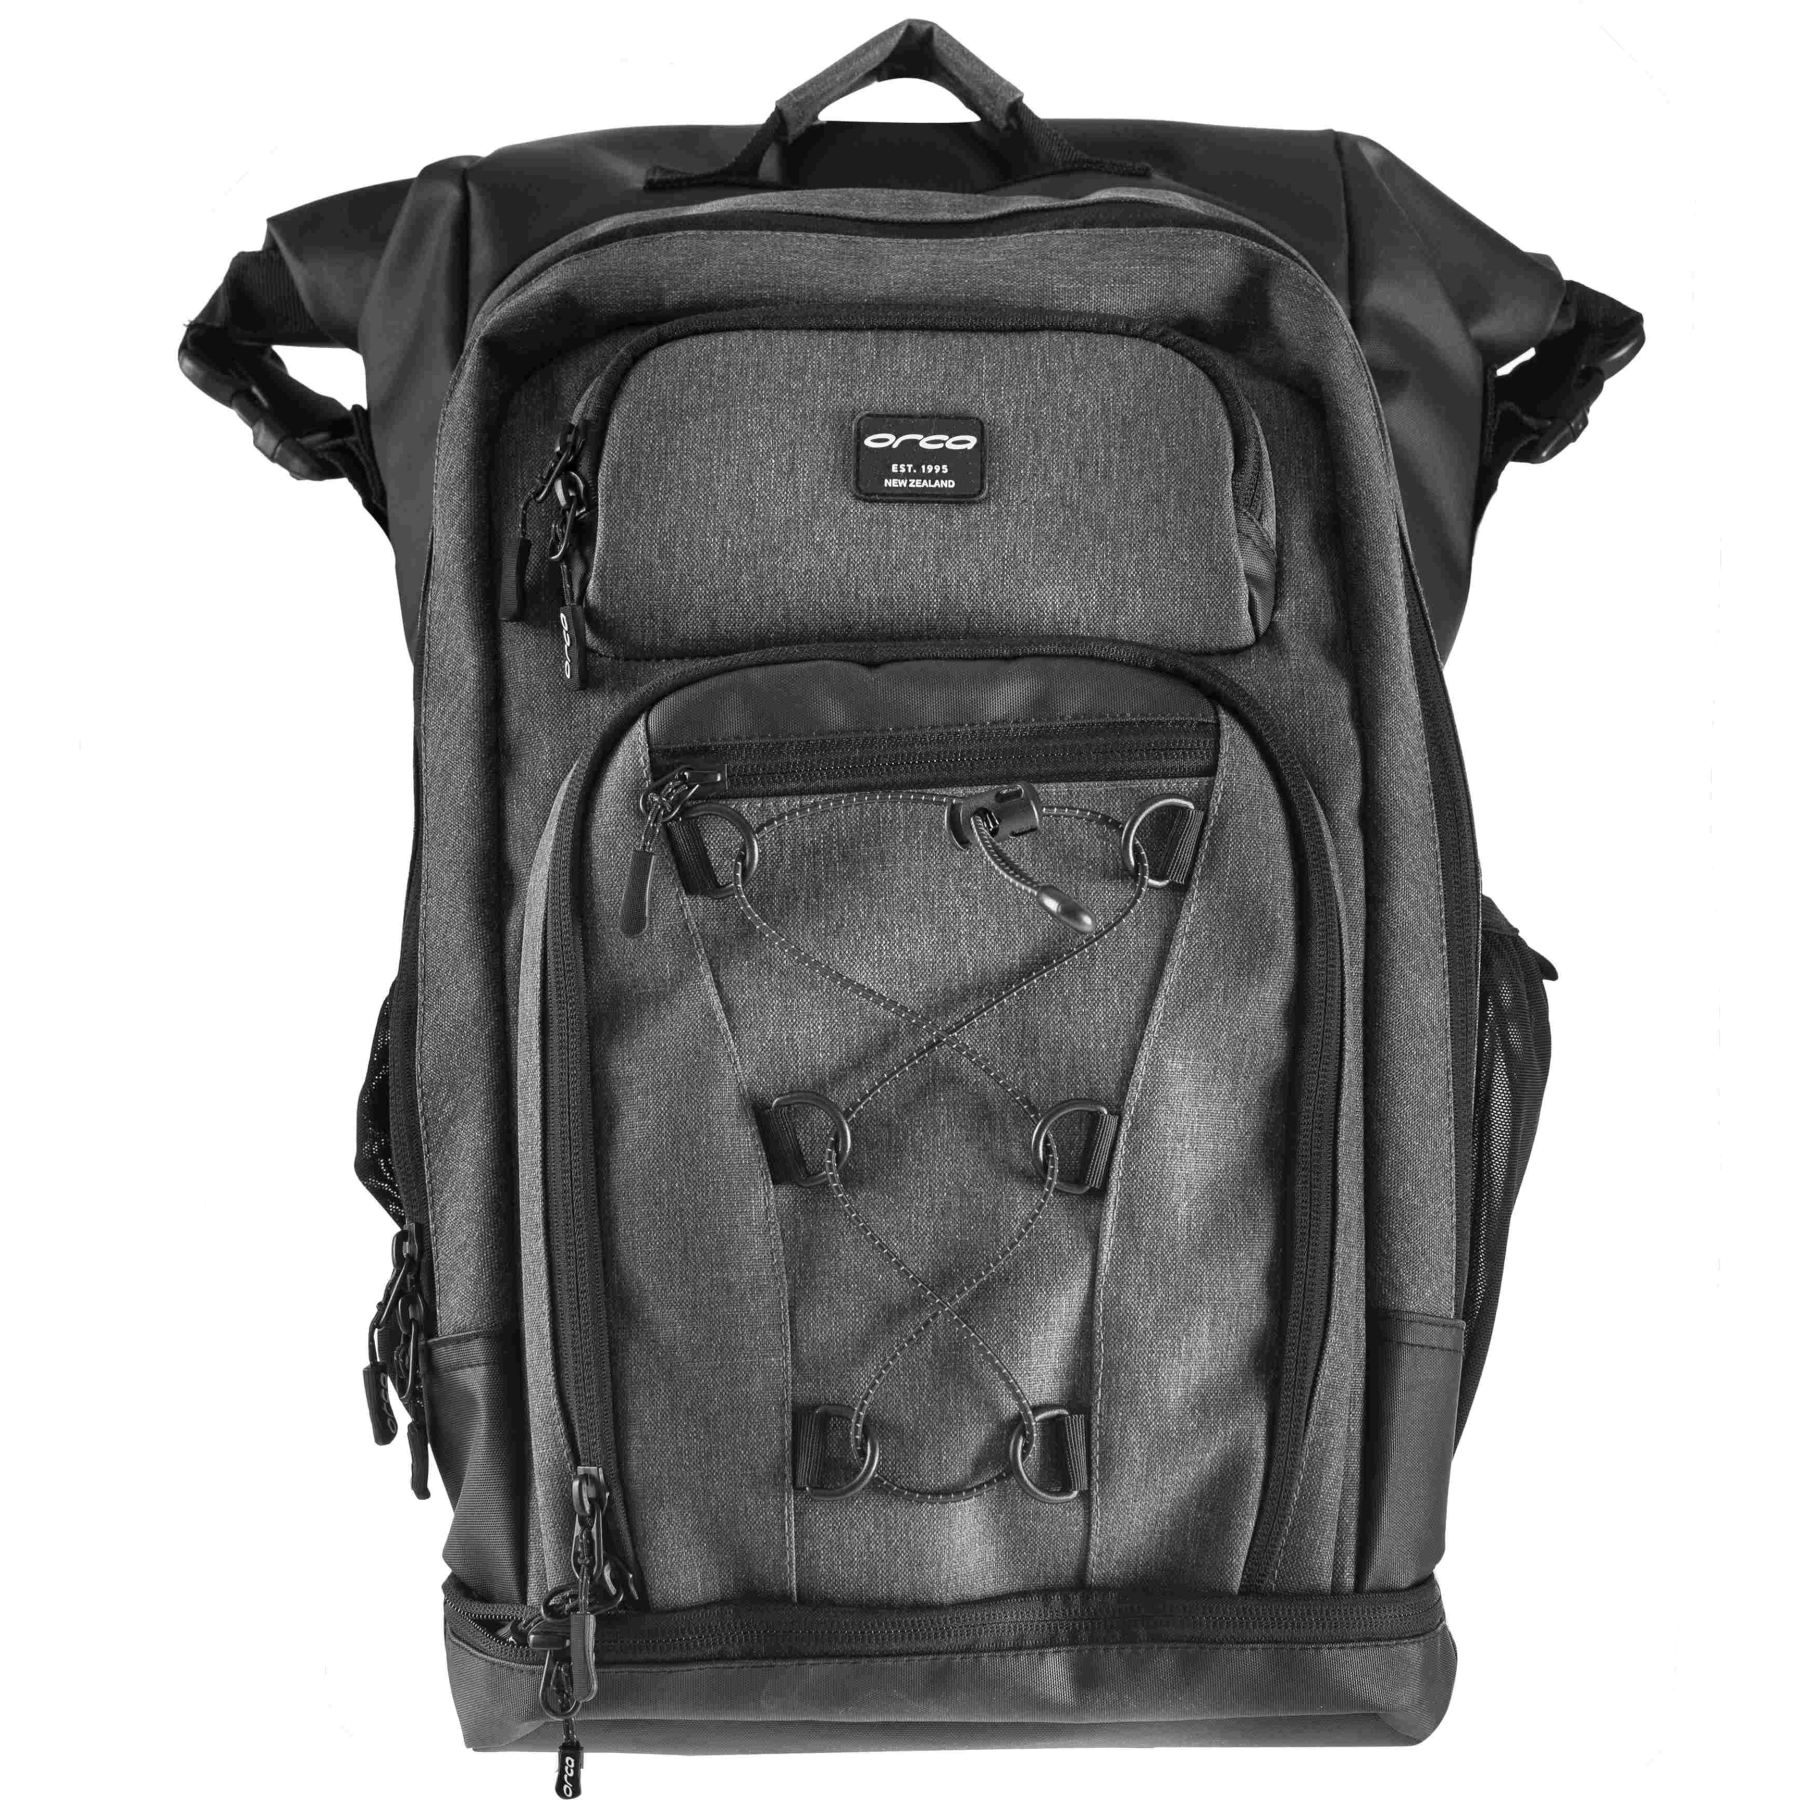 Produktbild von Orca Openwater Backpack Rucksack - black